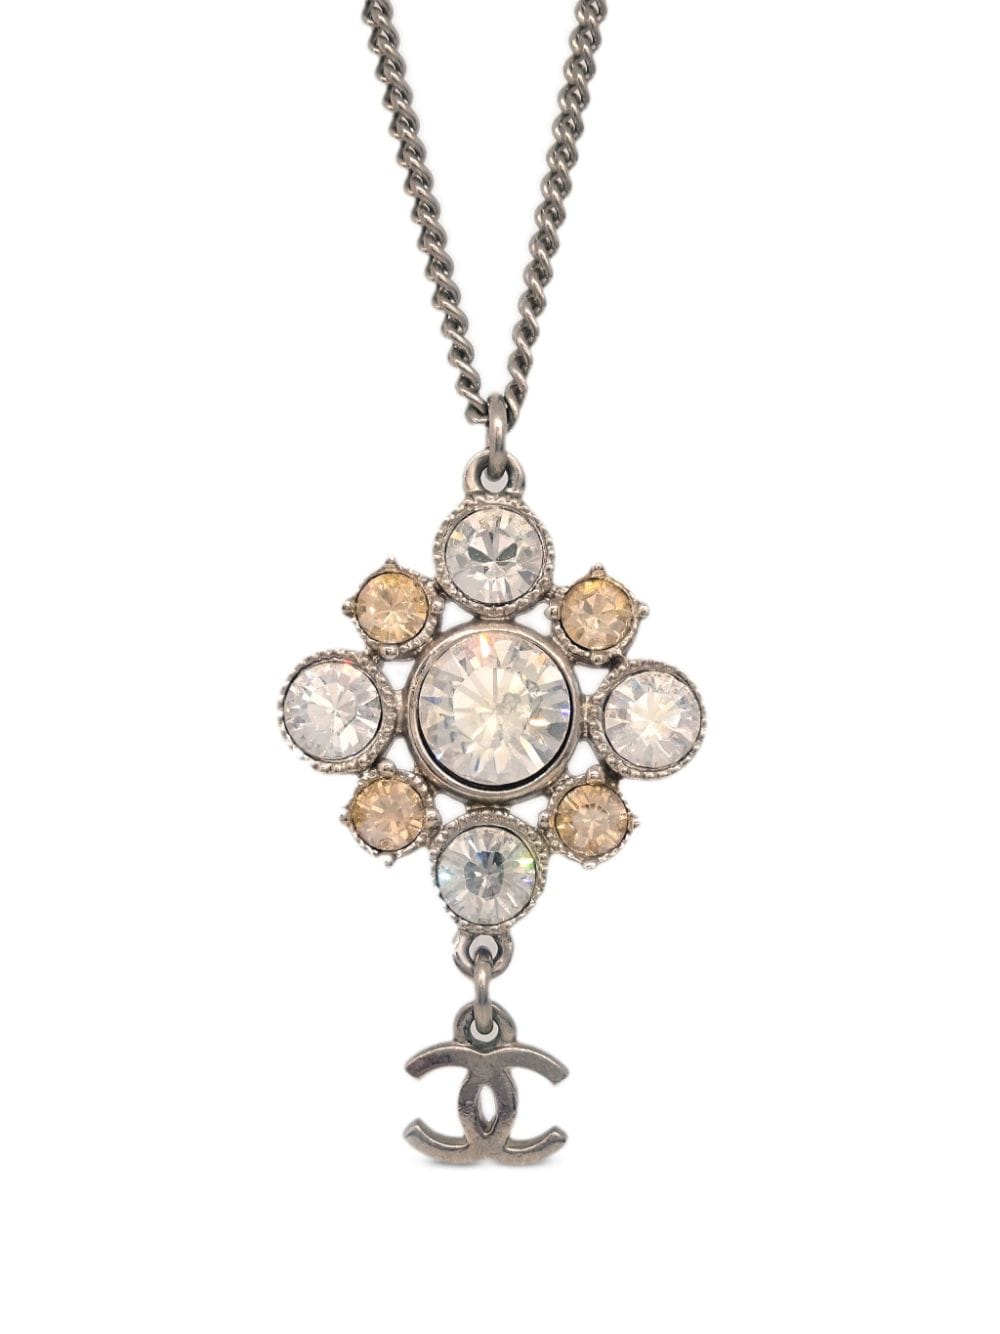 2010 rhistone-embellished CC pendants necklace